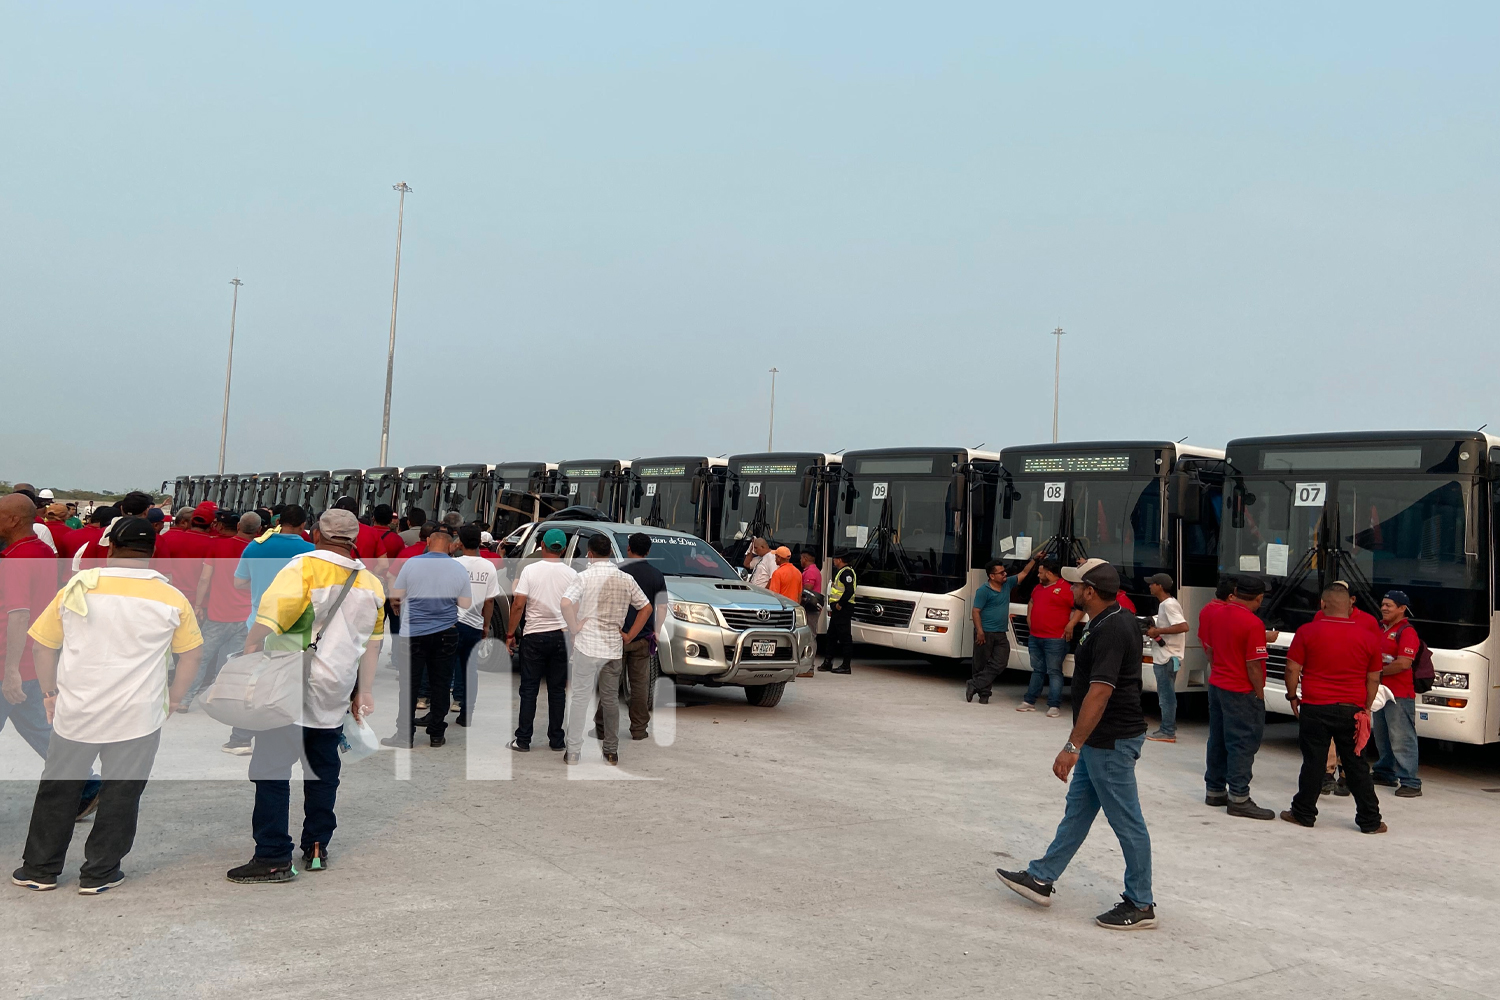 Nicaragua fortalece su transporte, con la llegada de 250 buses nuevos desde China